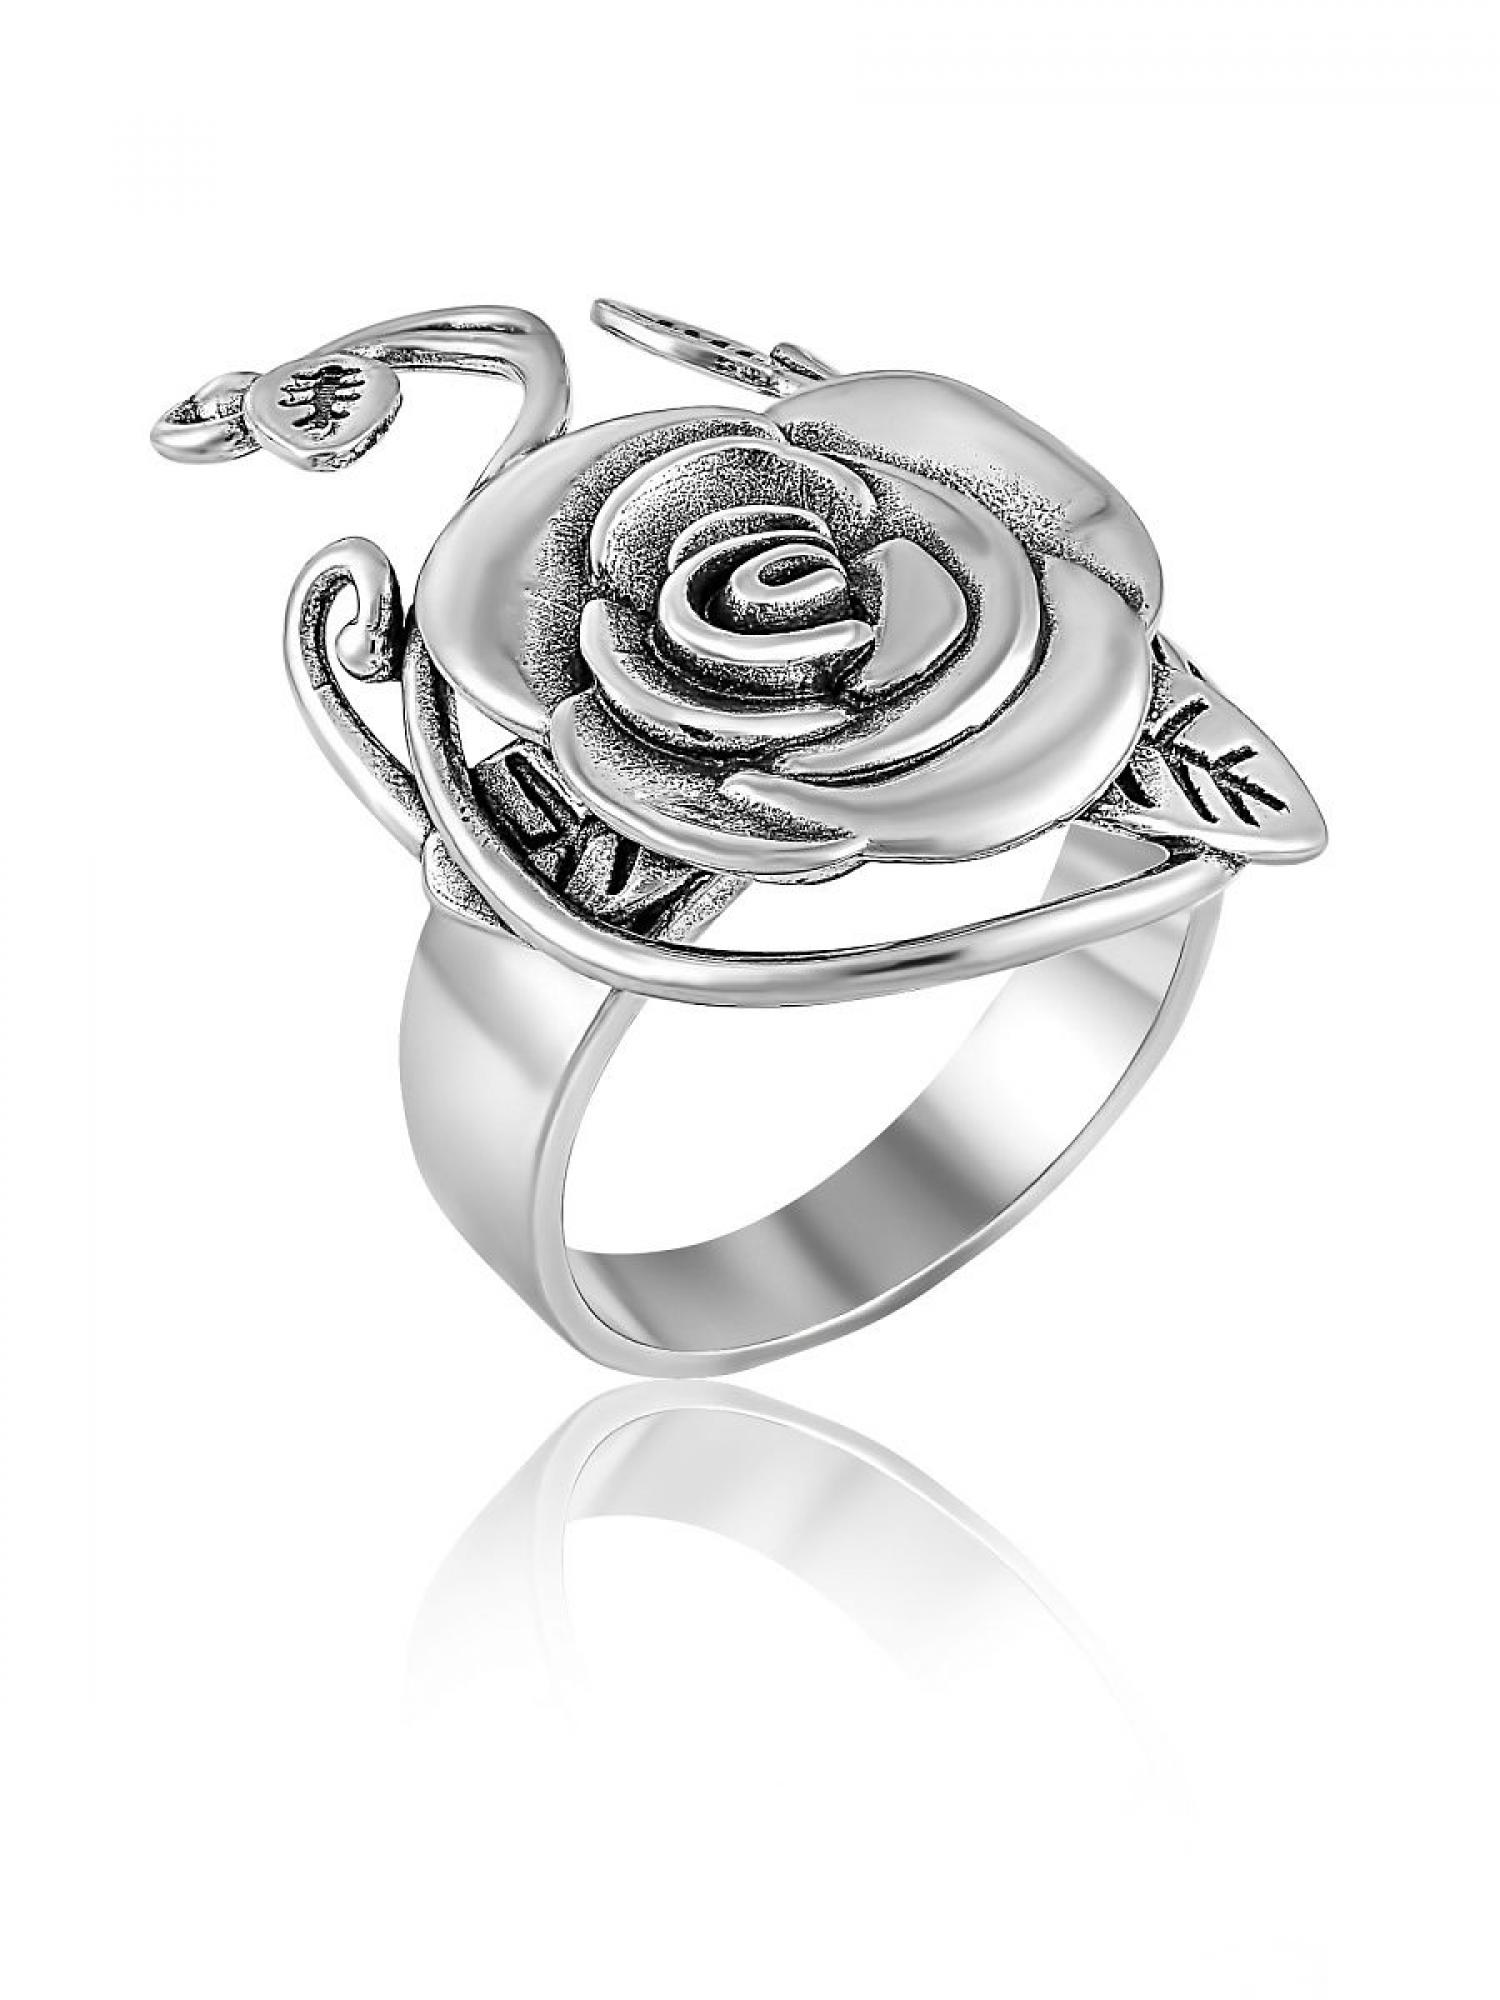 Серебряное кольцо Роза (3862)